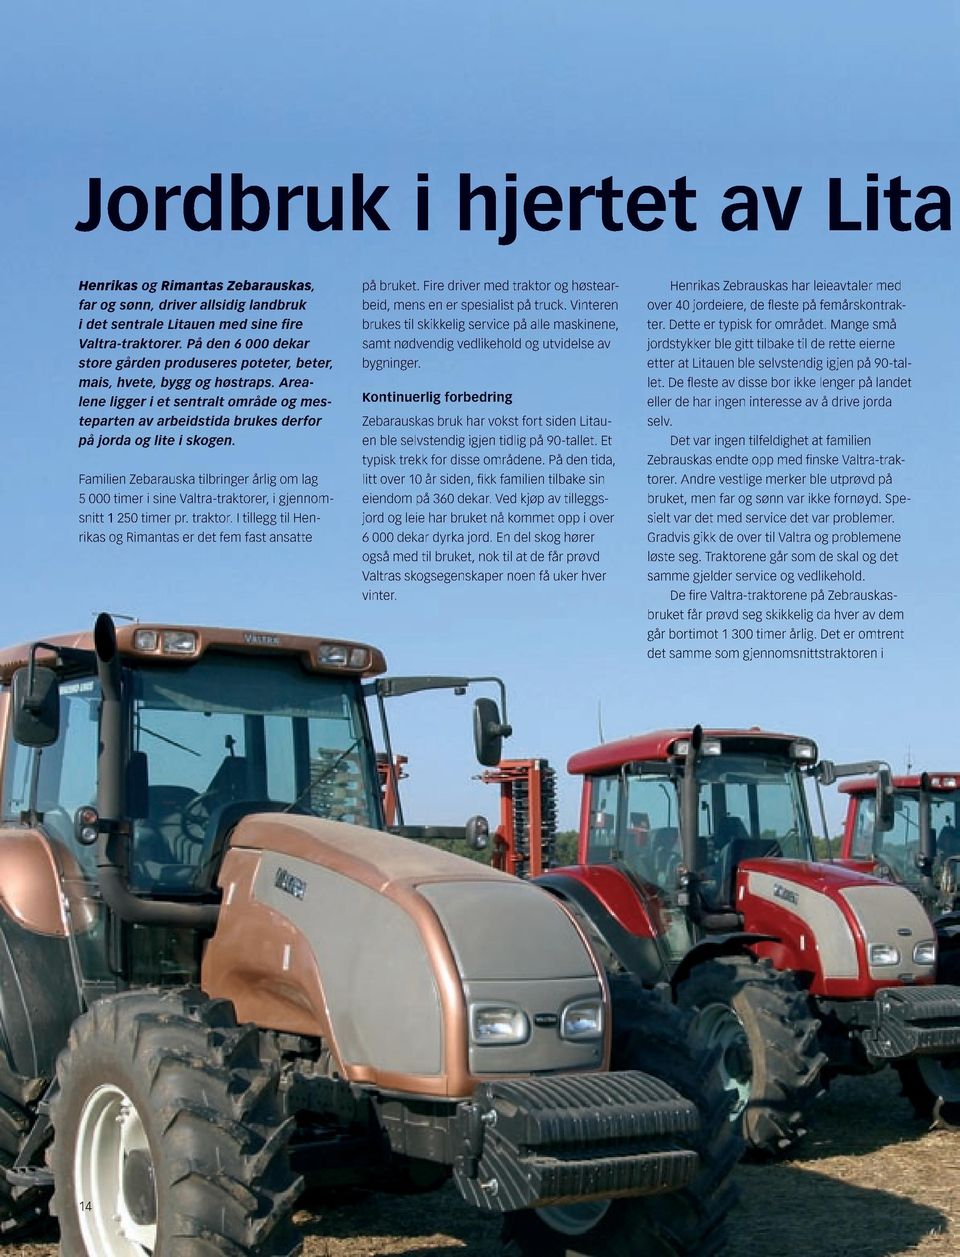 Familien Zebarauska tilbringer årlig om lag 5 000 timer i sine Valtra-traktorer, i gjennomsnitt 1 250 timer pr. traktor. I tillegg til Henrikas og Rimantas er det fem fast ansatte på bruket.